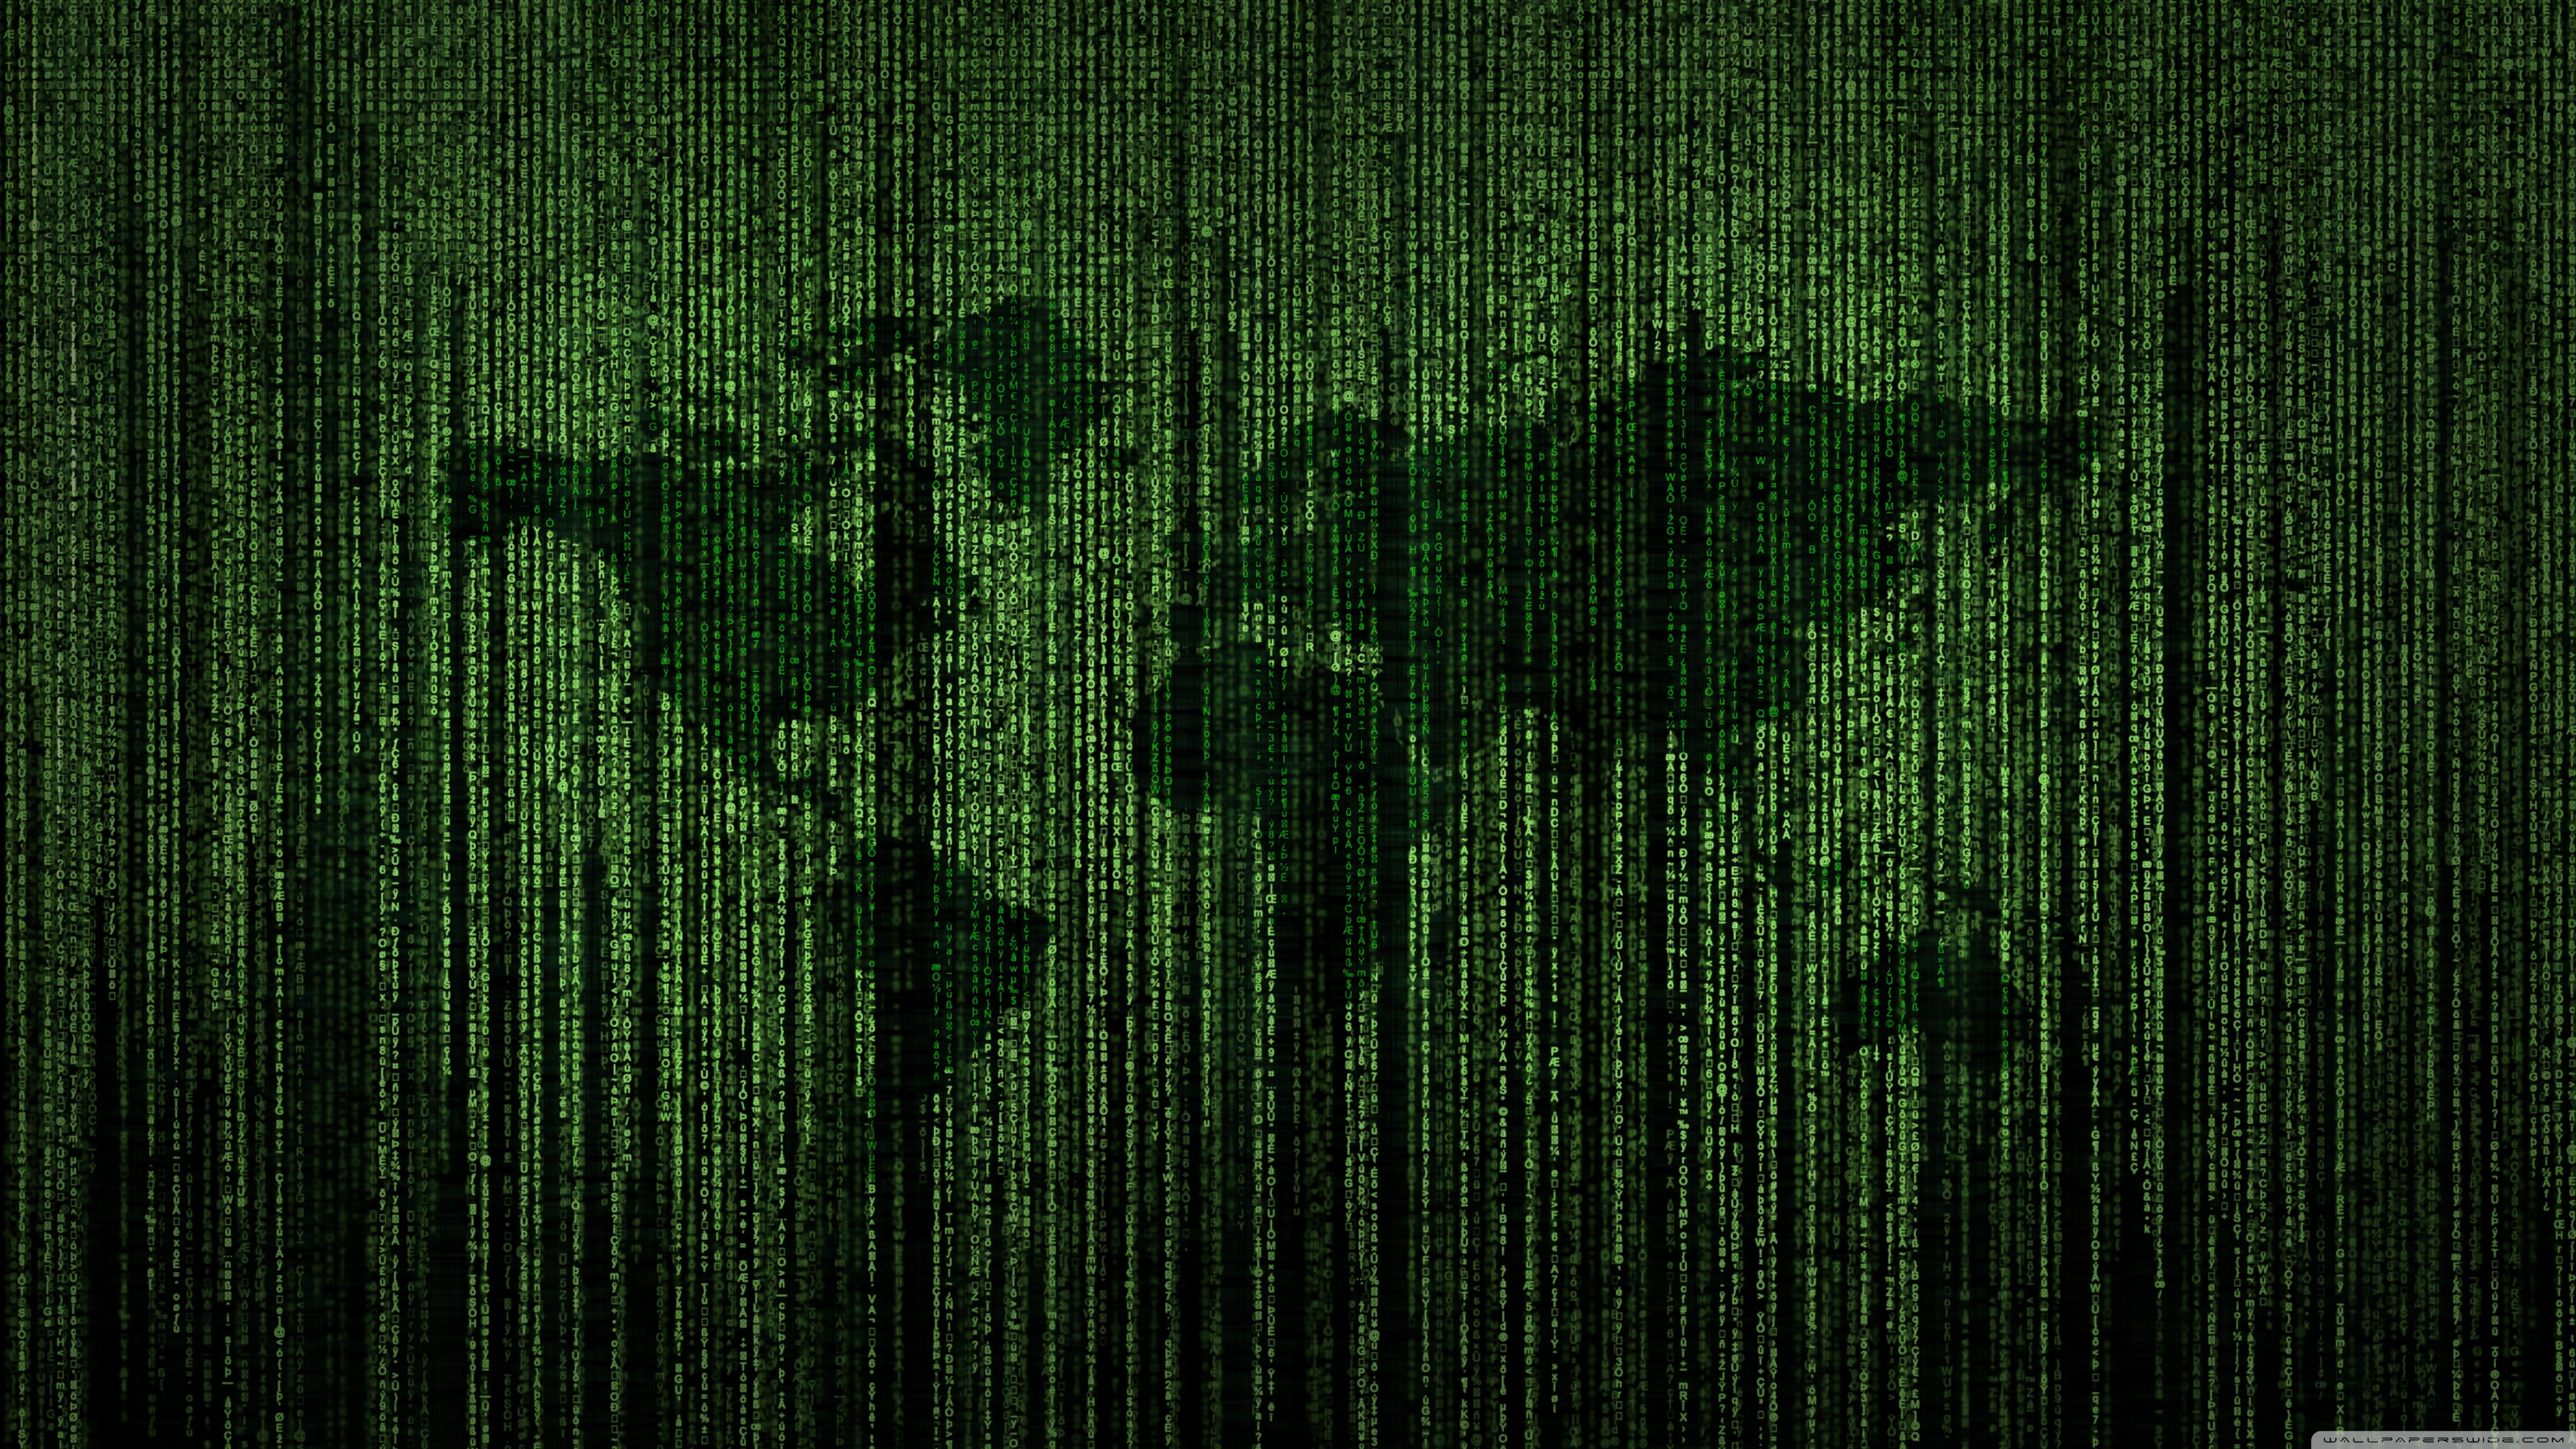 Green Matrix Code World Map 4K HD Desktop Wallpaper for 4K